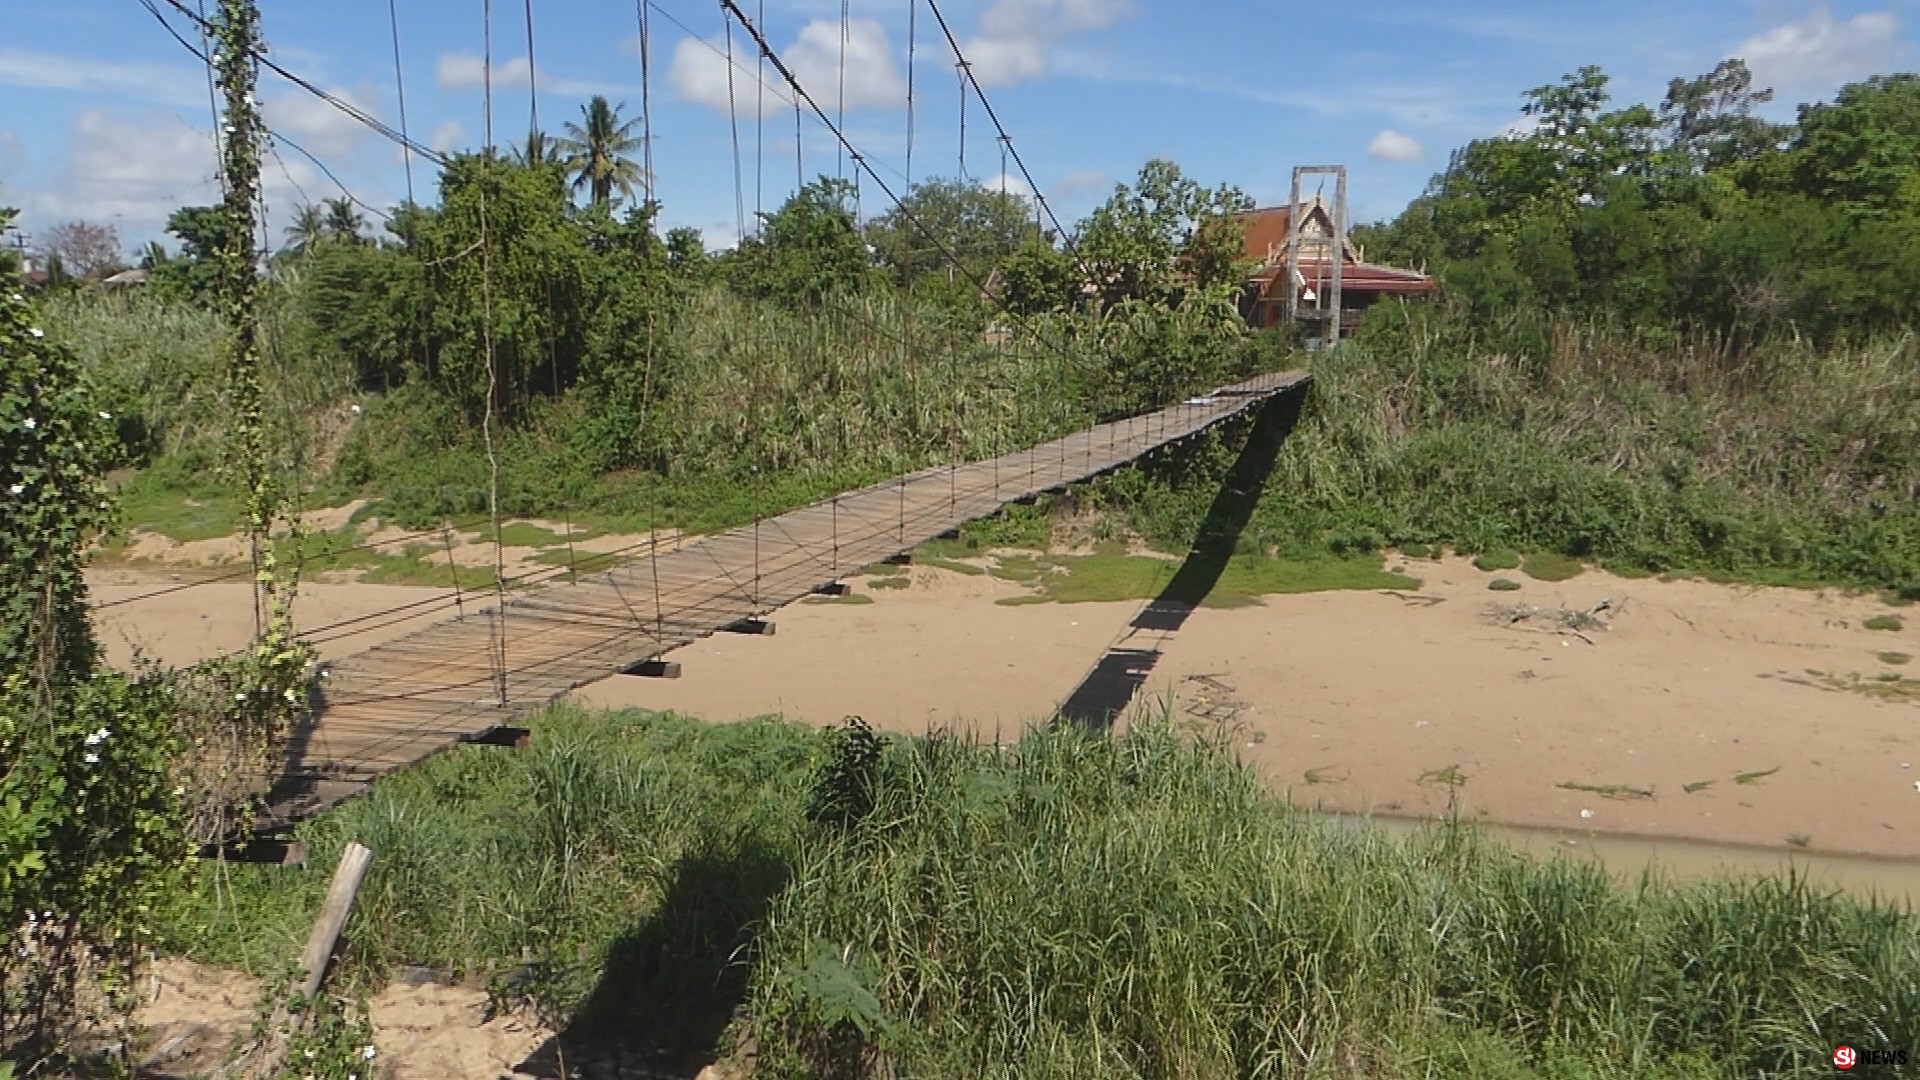 สุโขทัย โชคยังเข้าข้าง ป้าวัย 60 ดื้อใช้สะพานแขวนไม้ชำรุดพลาดตกสะพานรอดปาฏิหาริย์